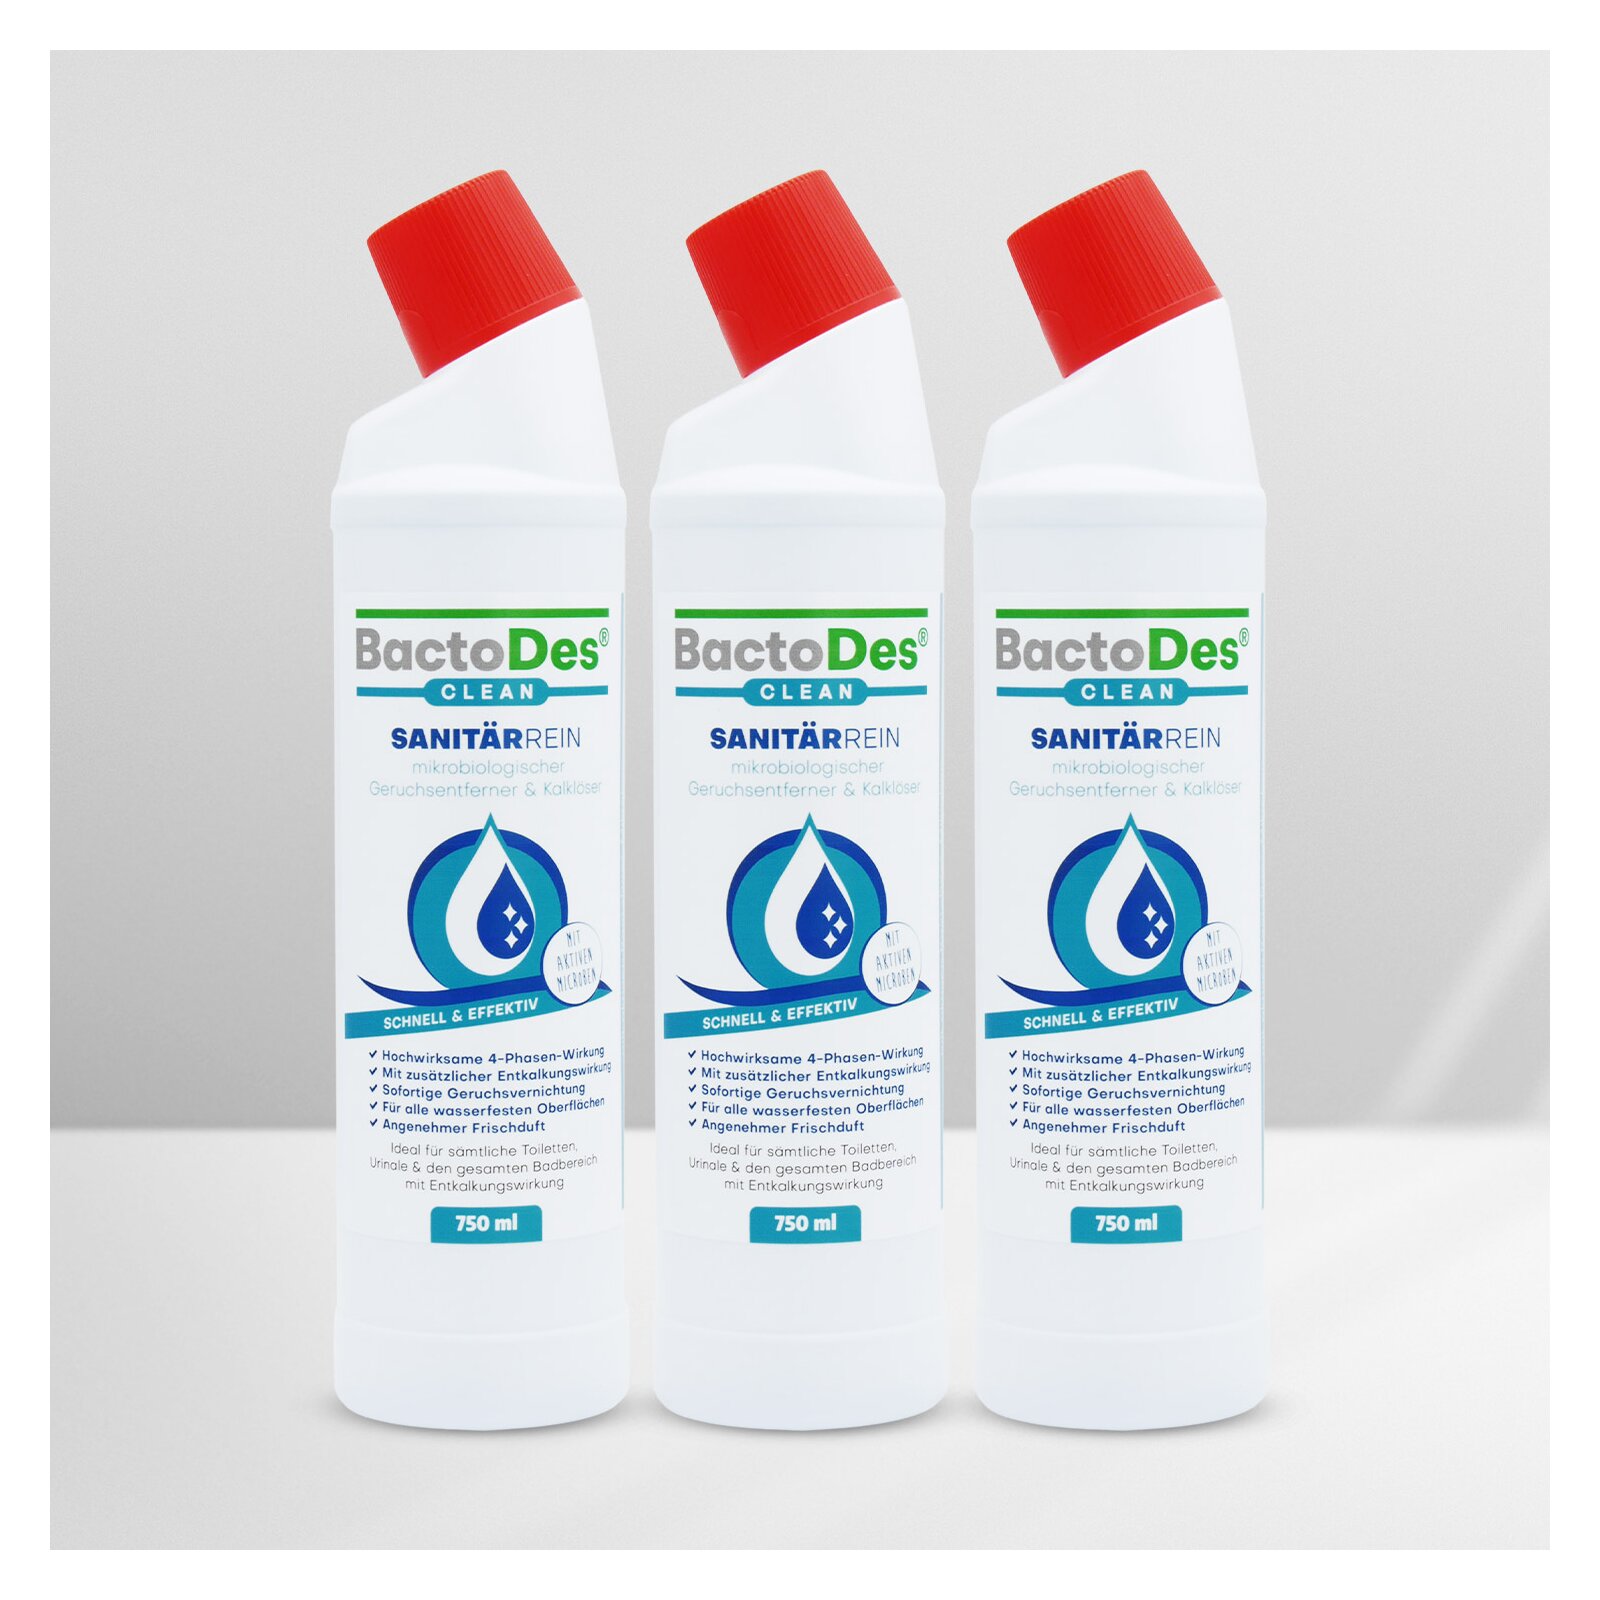 BactoDes(R) SanitärRein  Mikrobiologischer Sanitärreiniger und Geruchsentferner 750ml Flasche 3 Flaschen unter BactoDes Clean SanitaerRein